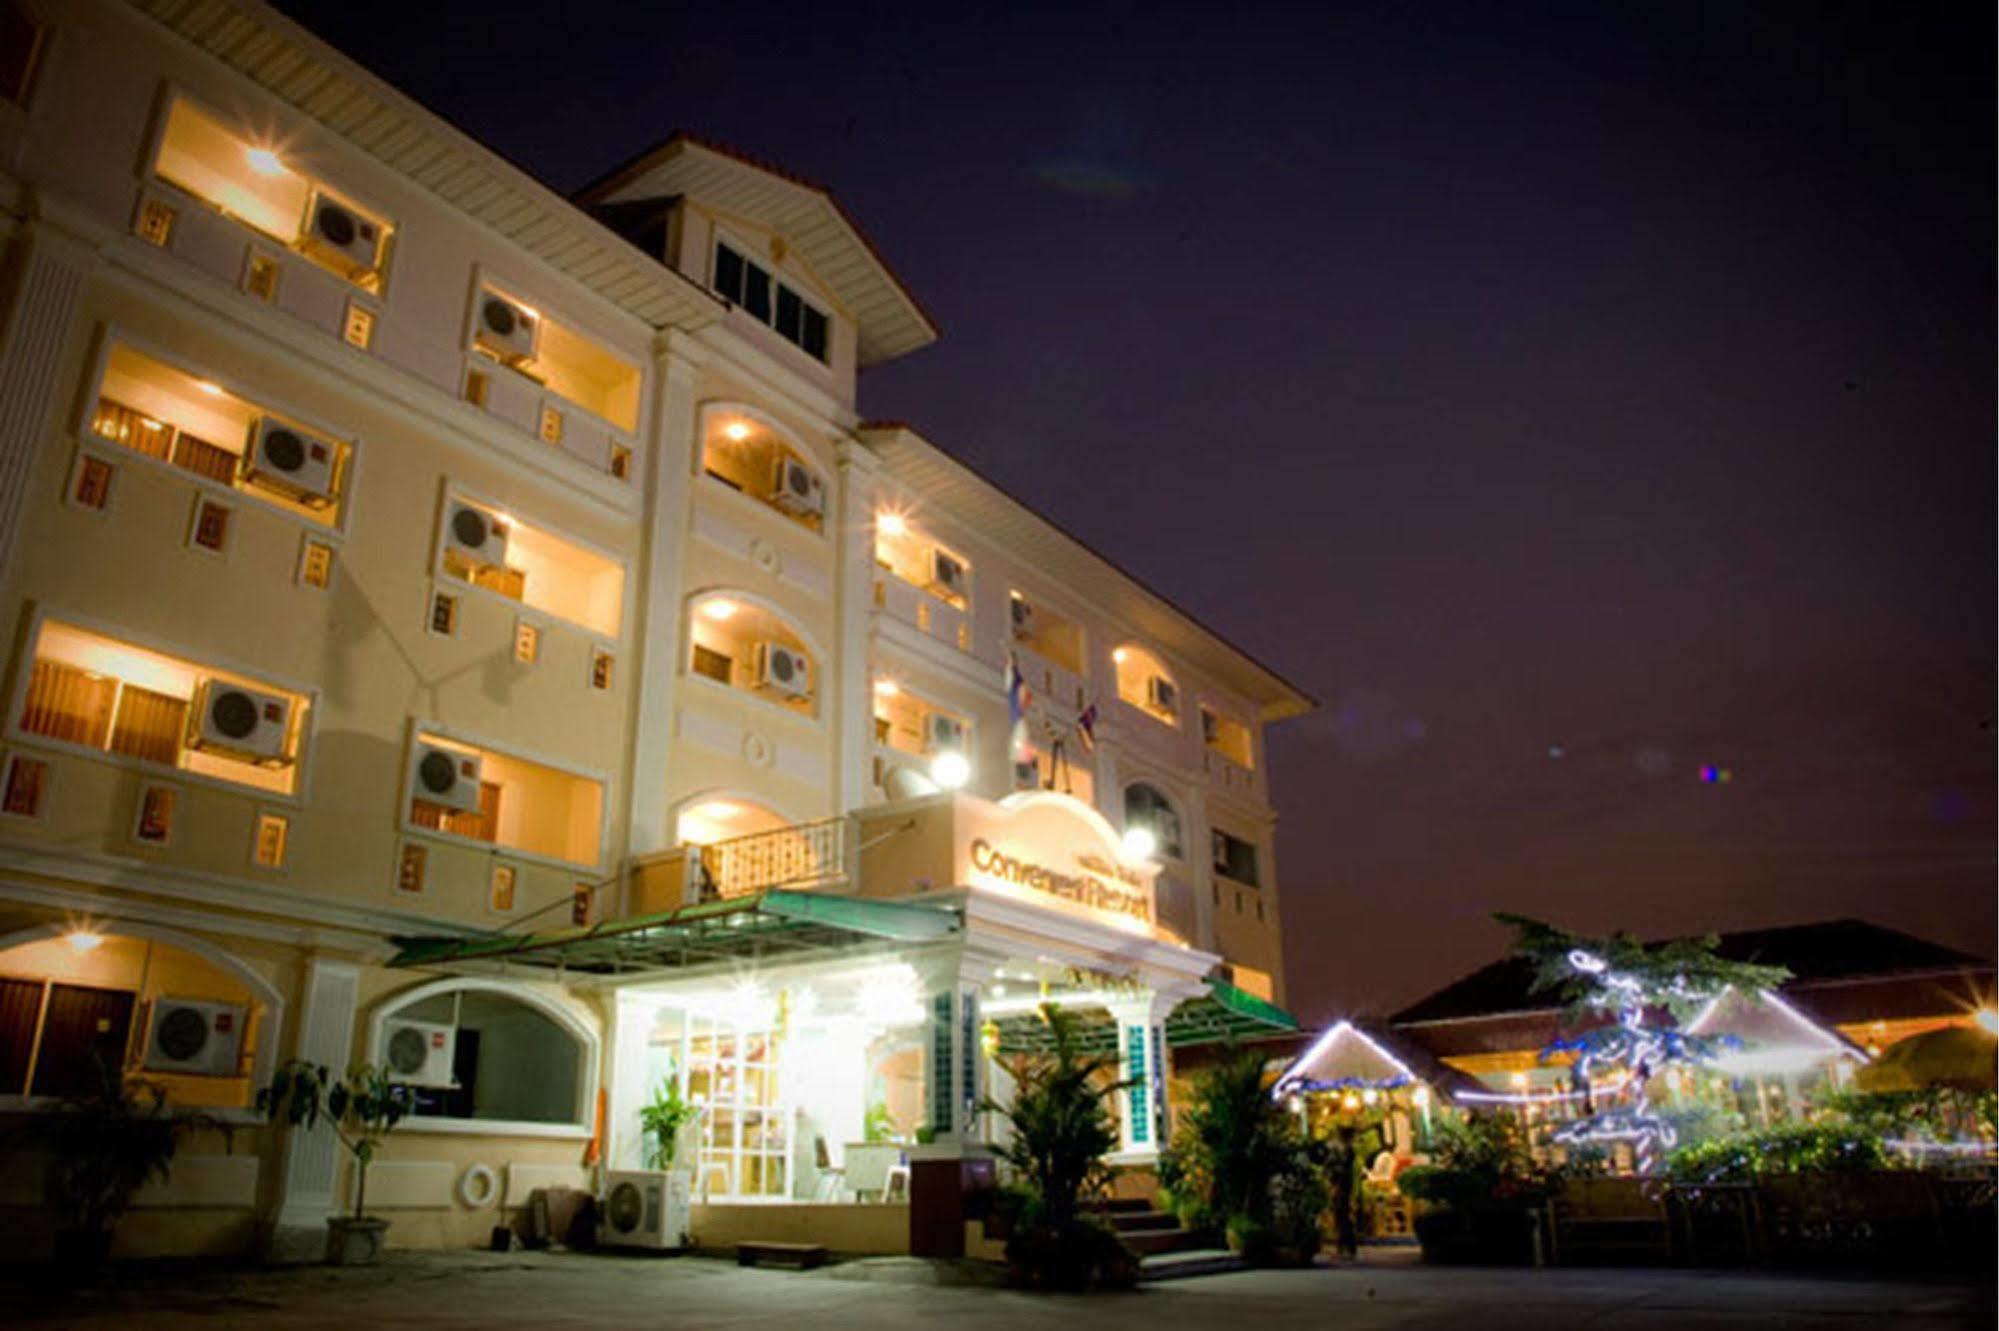 Convenient Resort, Suvarnabhumi Airport バンコク都 エクステリア 写真